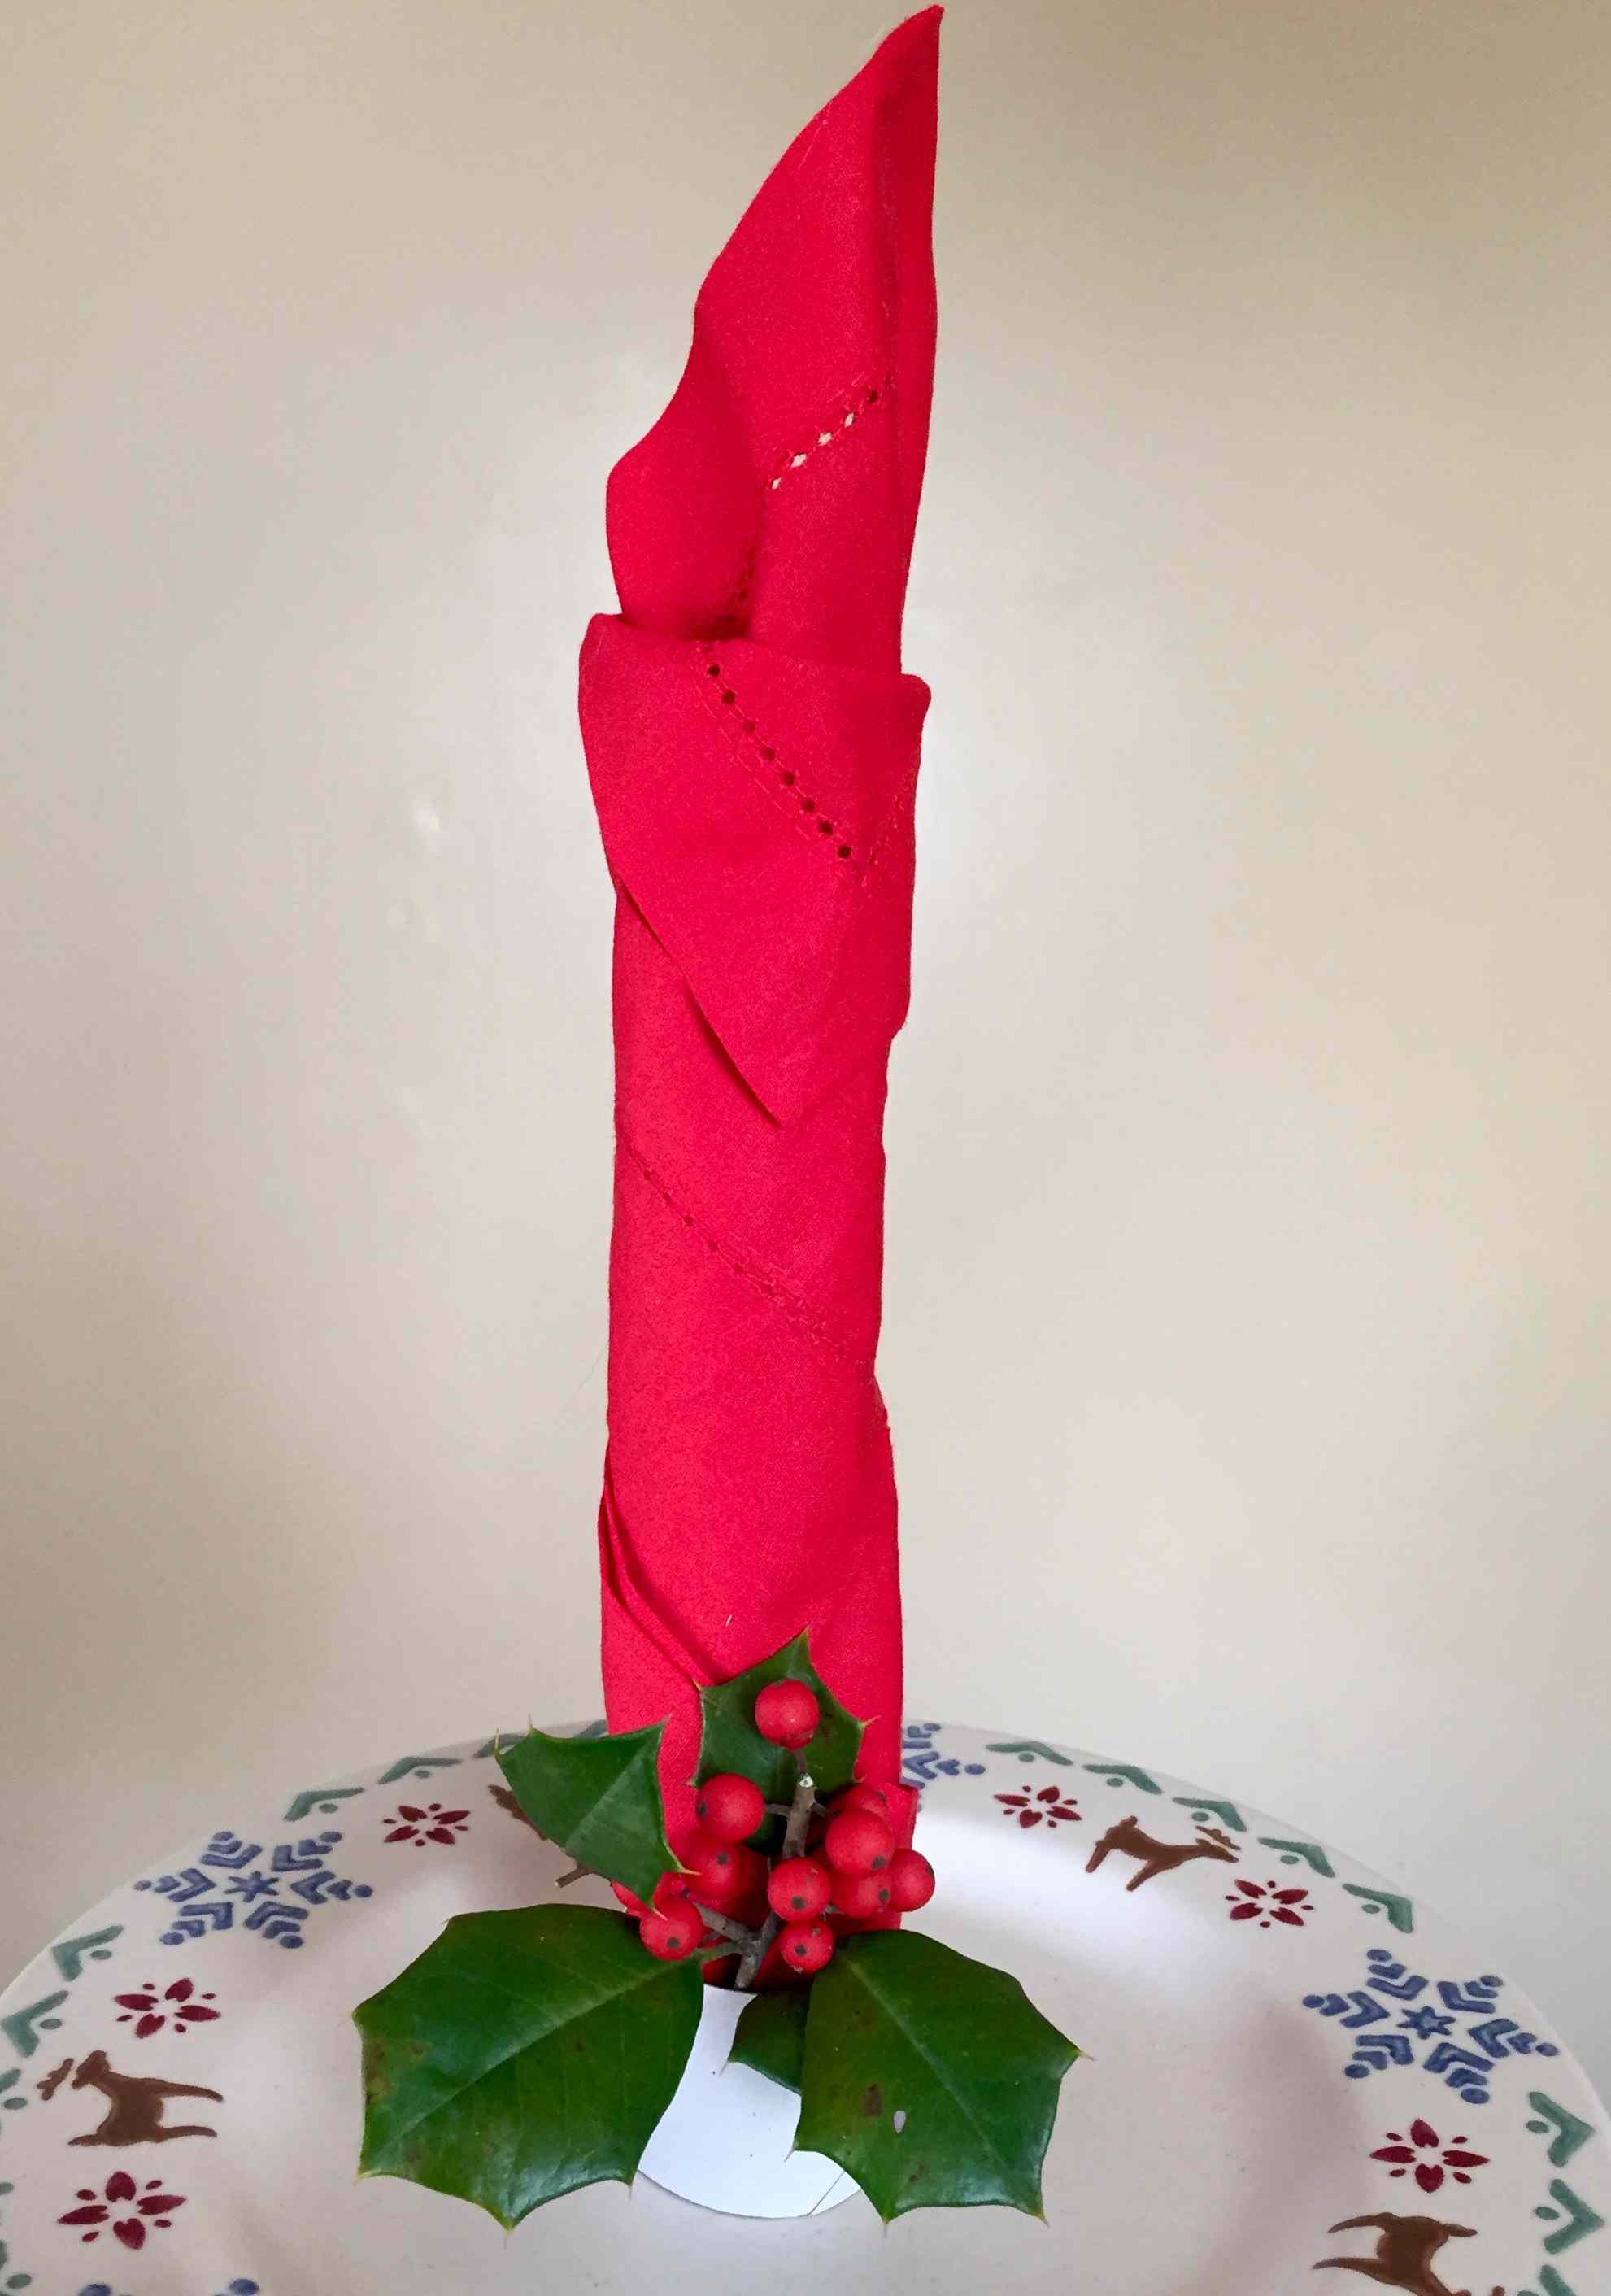 红色餐巾折叠成蜡烛形状